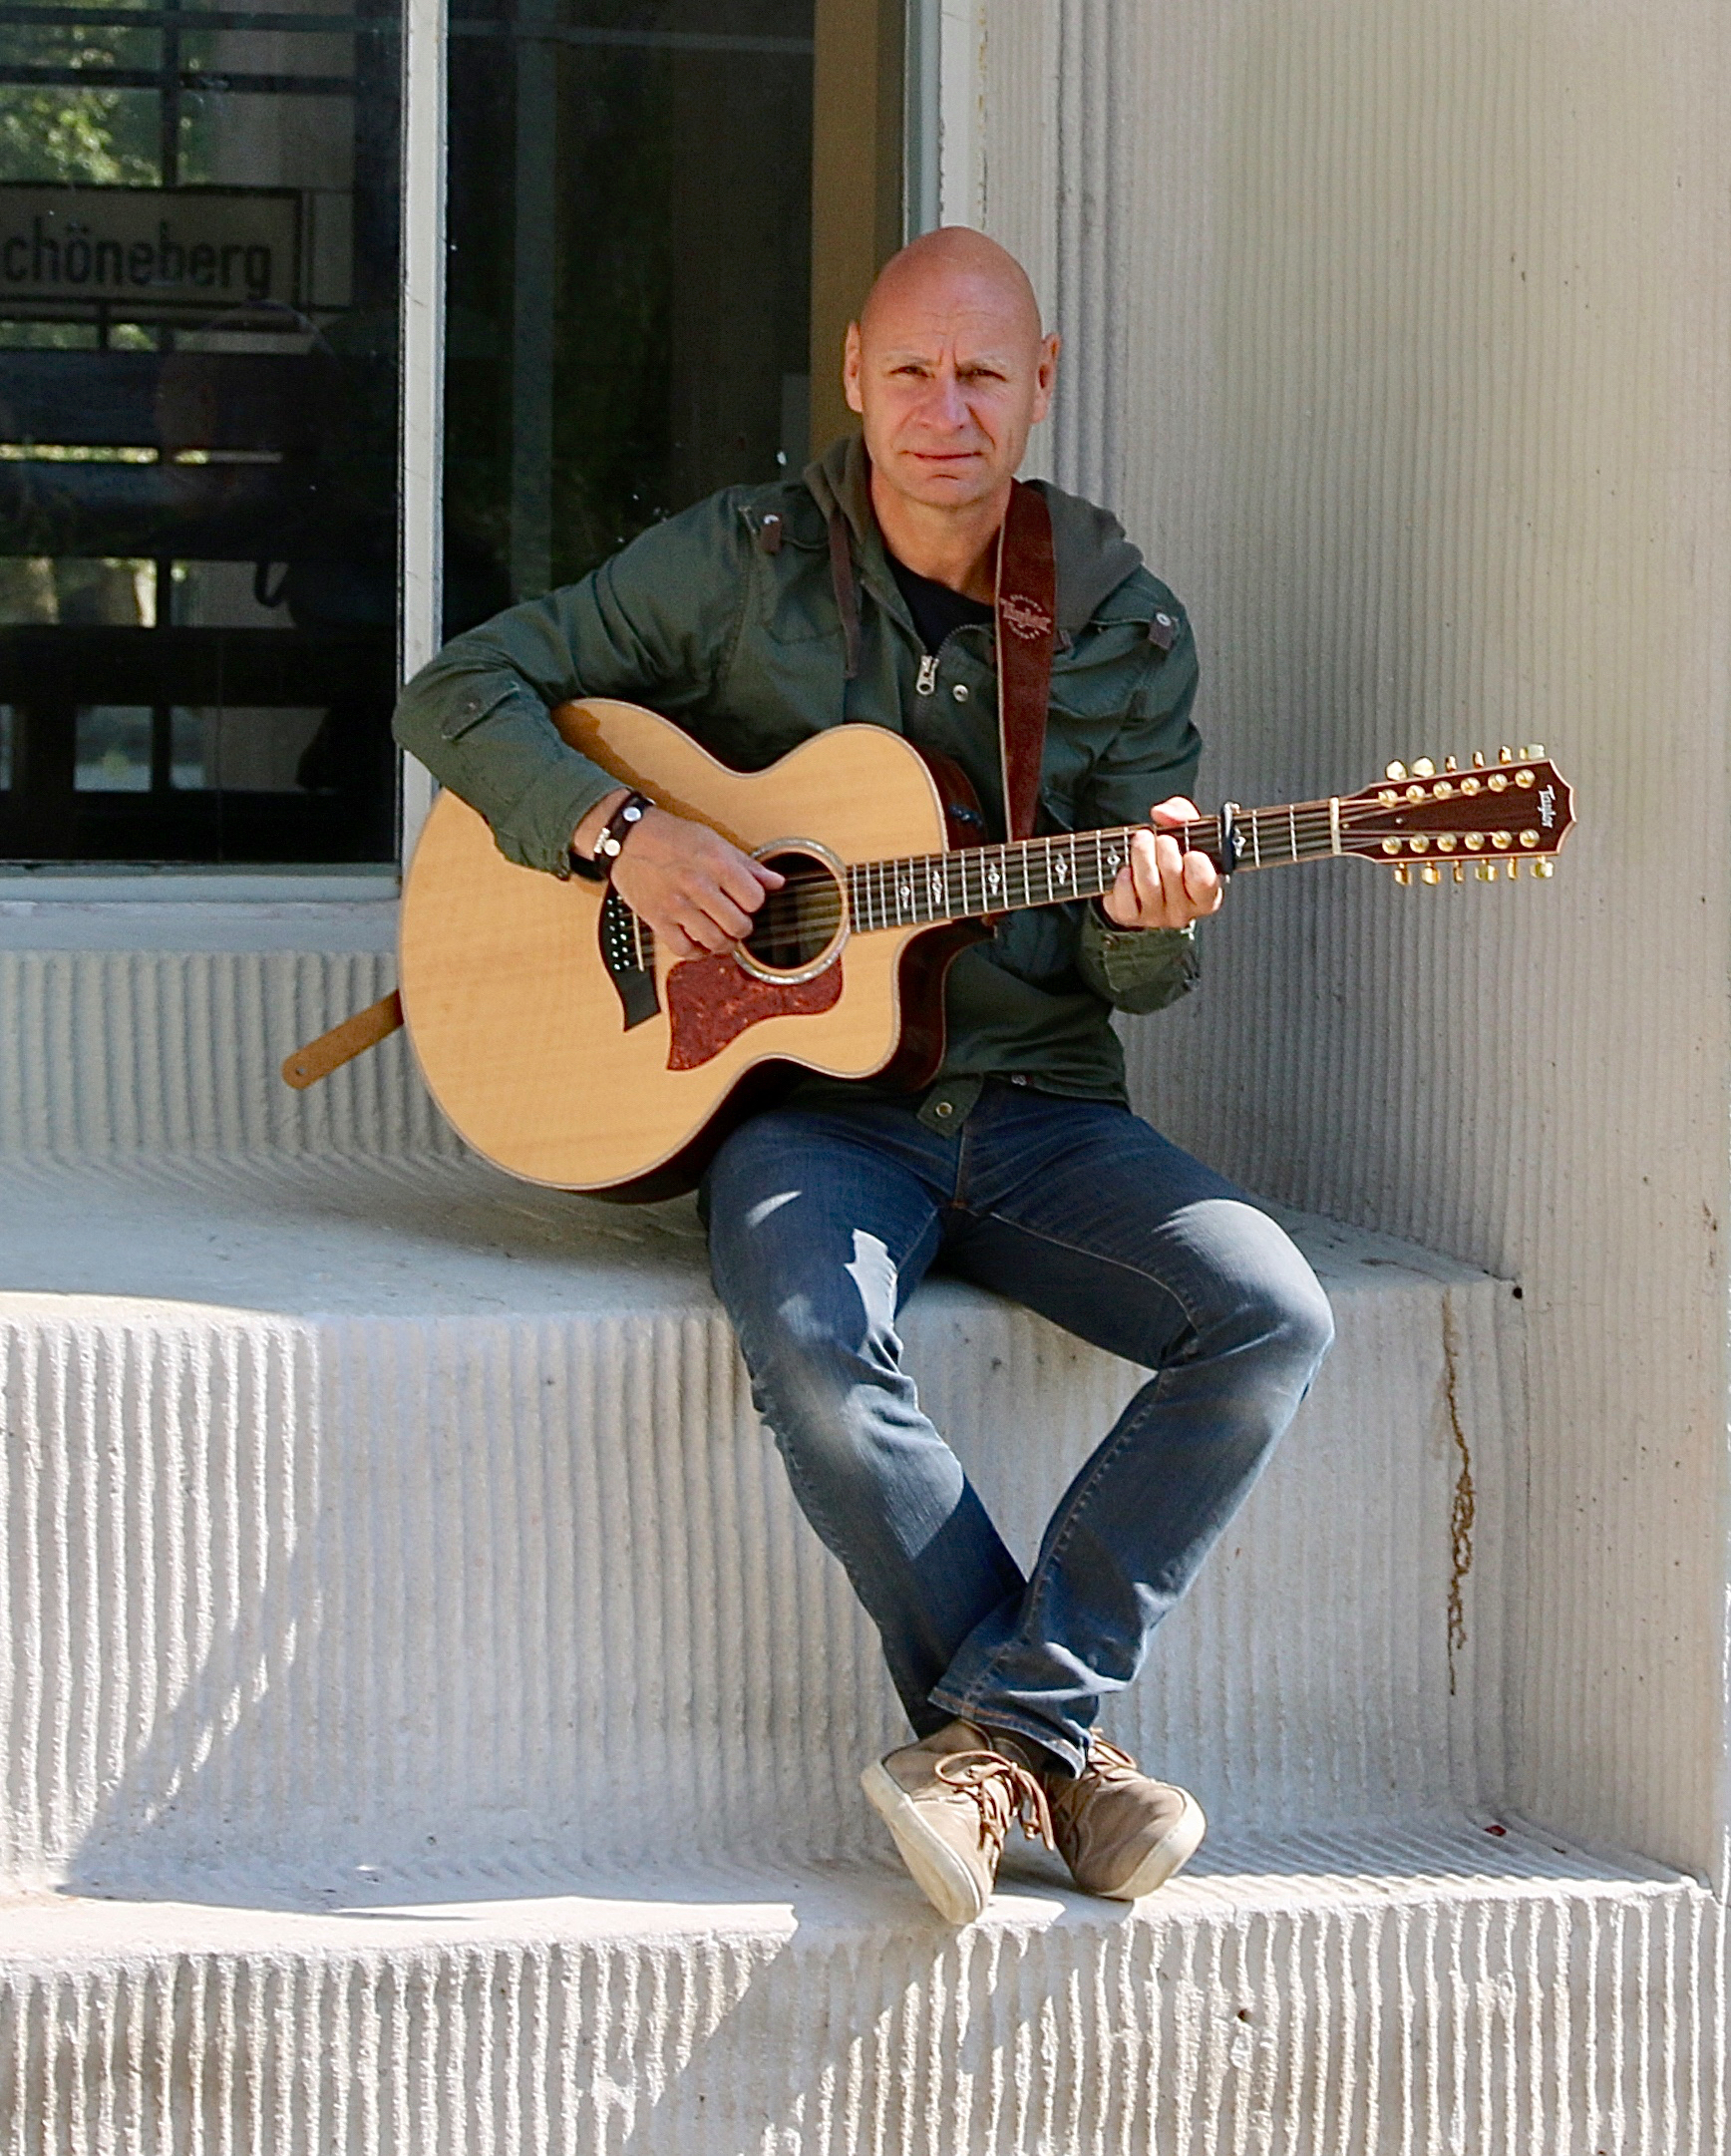 Der Solo-Künstler Randy sitzt auf einer weißen Treppe. Dabei sielt er auf seiner Akkustikgitarre.